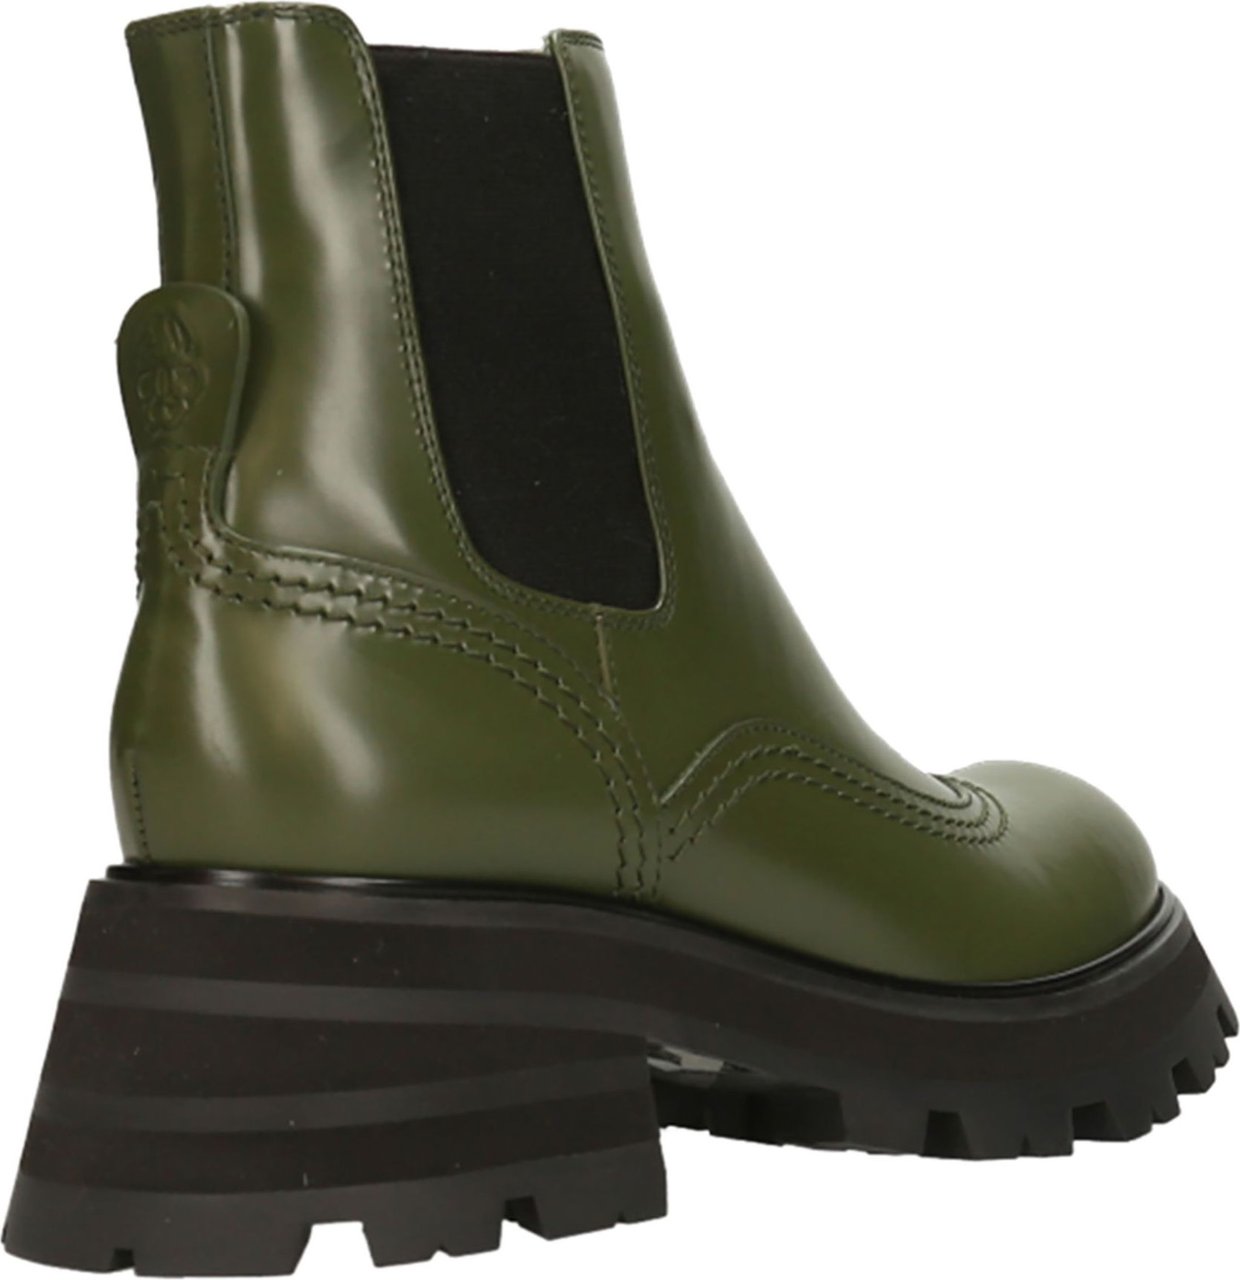 Alexander McQueen Boots Groen Groen